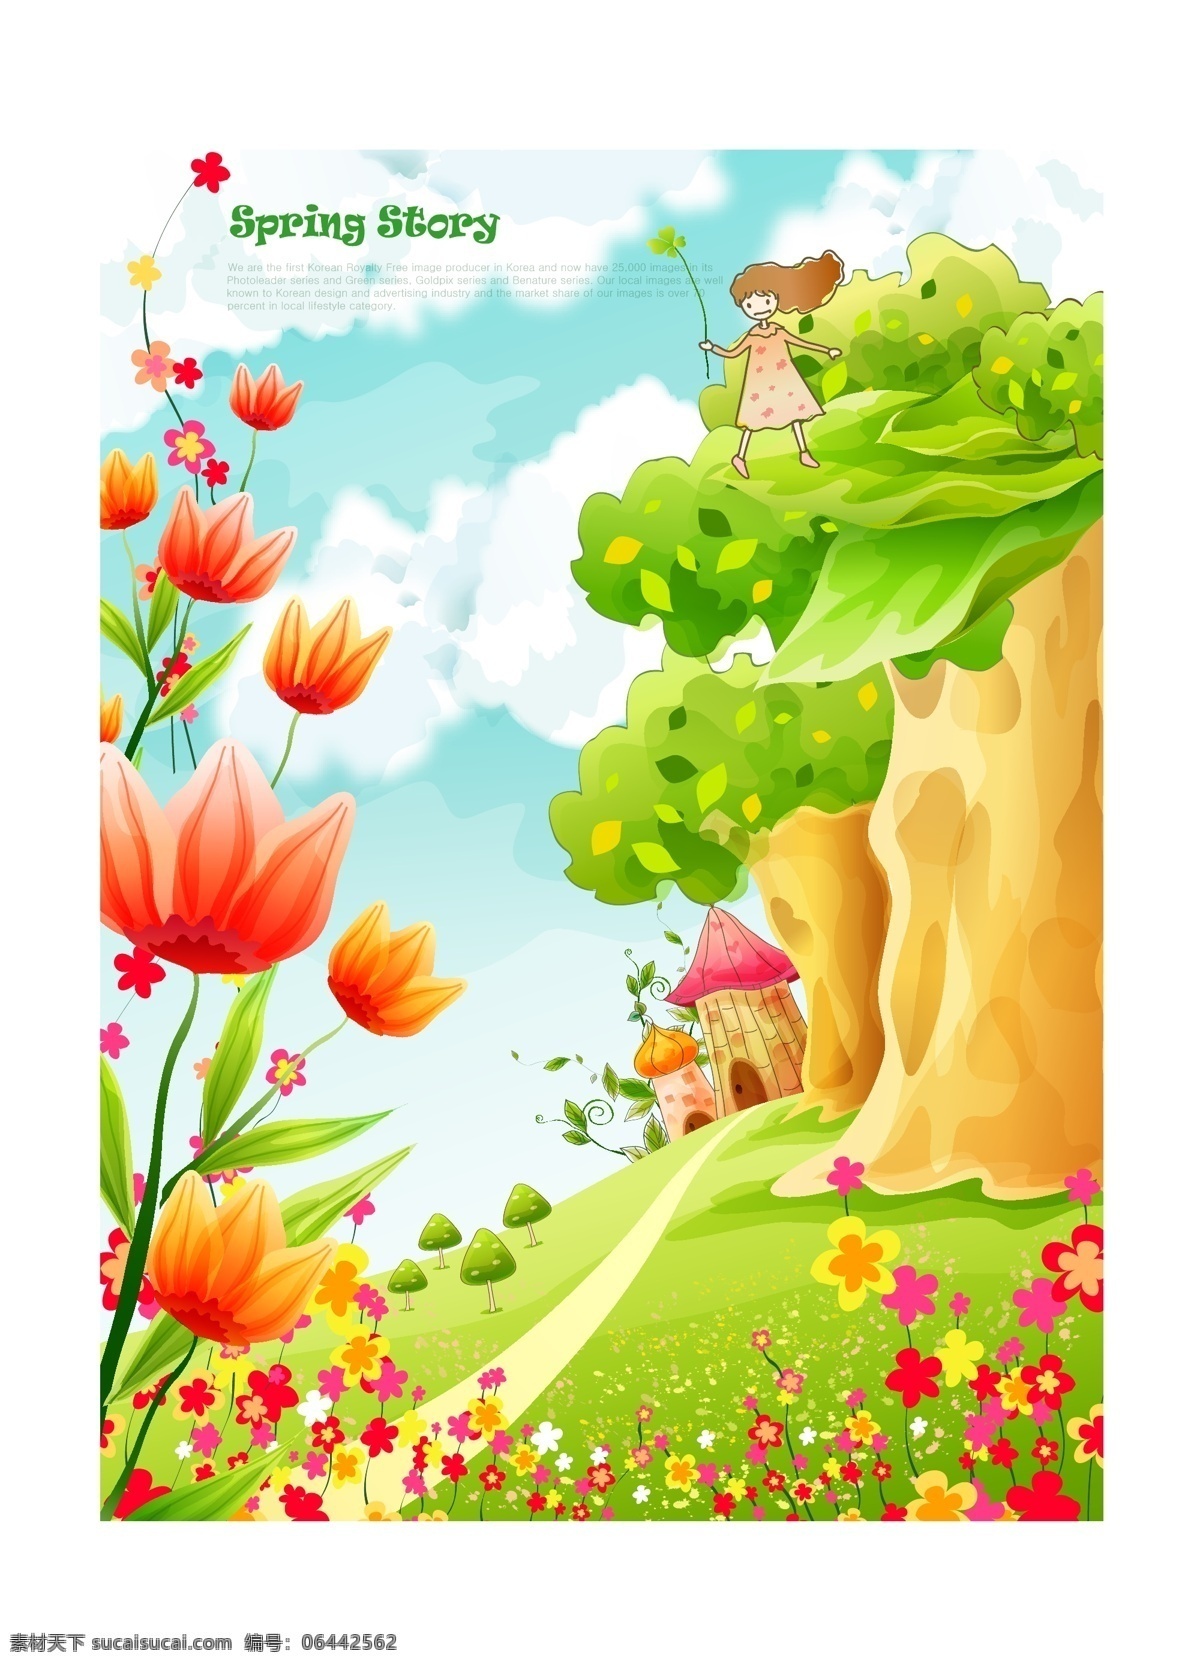 韩式 可爱 卡通 春天 矢量 海报 插画 城堡 儿童 风景 花瓣 花草 花朵 植物 叶子 绿叶 小屋子 卡通人物 绿树 树叶 蓝天白云 其他海报设计